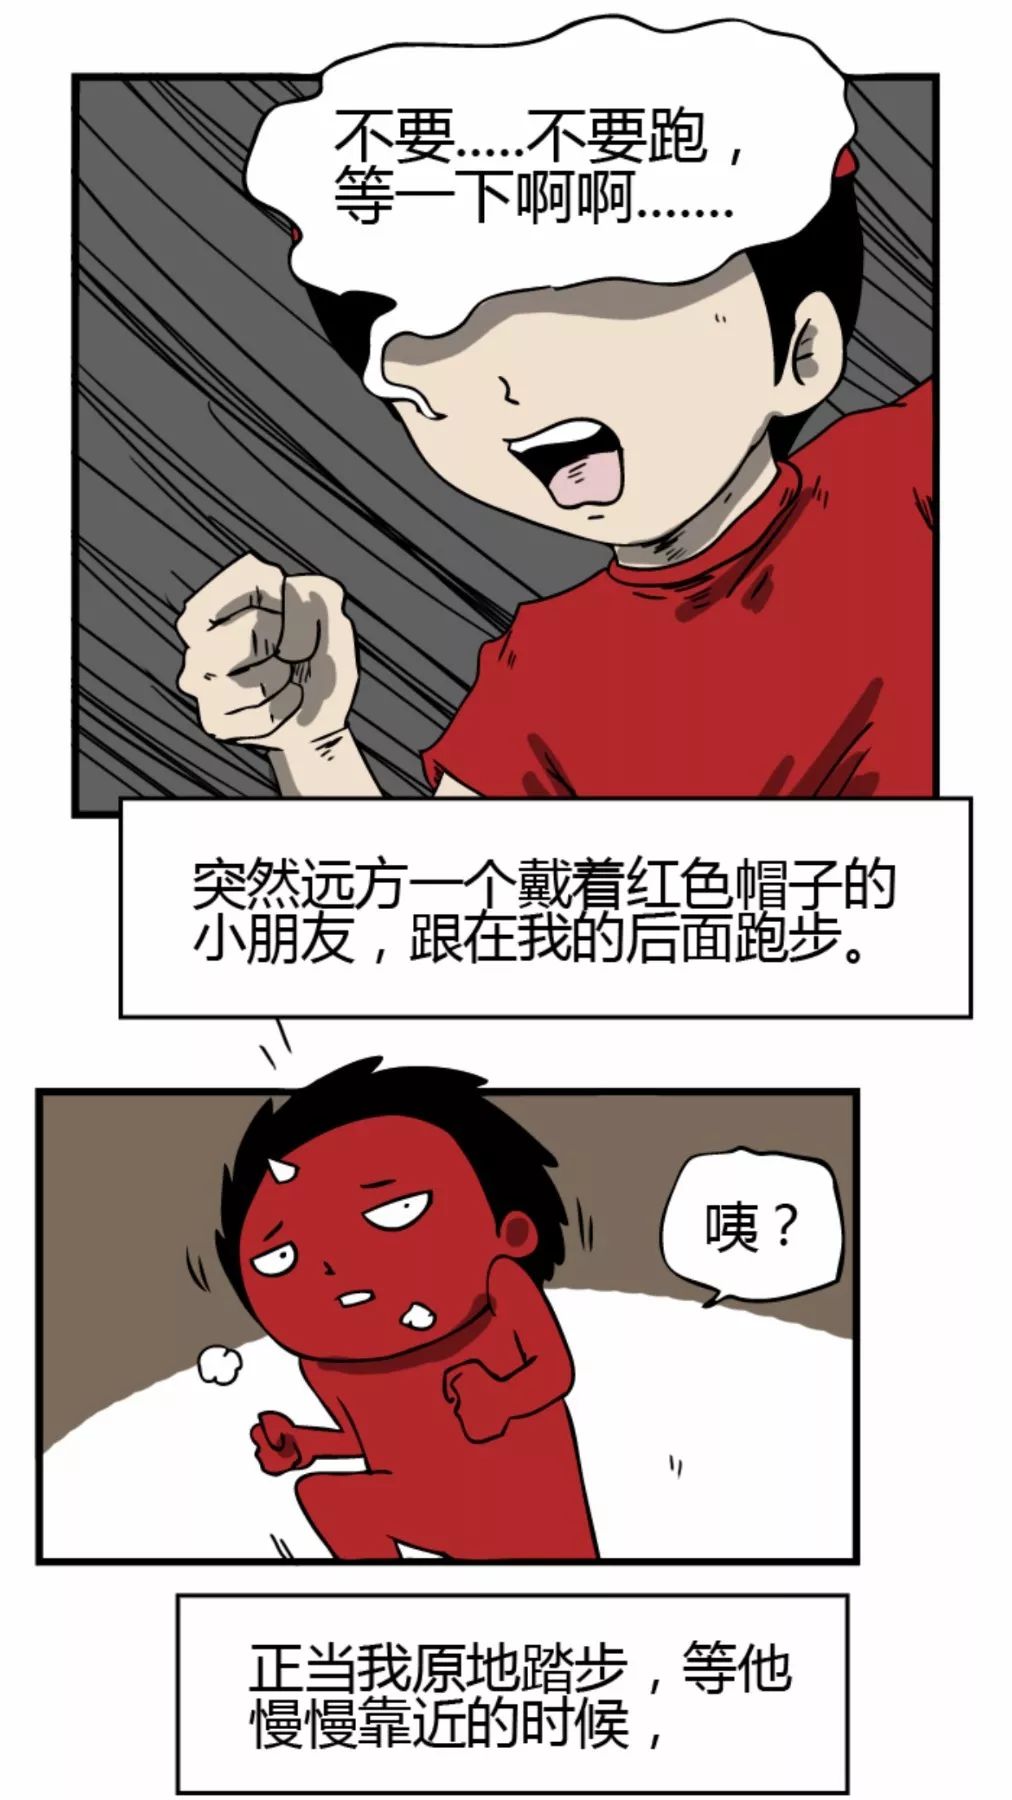 【靈異漫畫】《跑步》染紅帽的小男孩 靈異 第5張